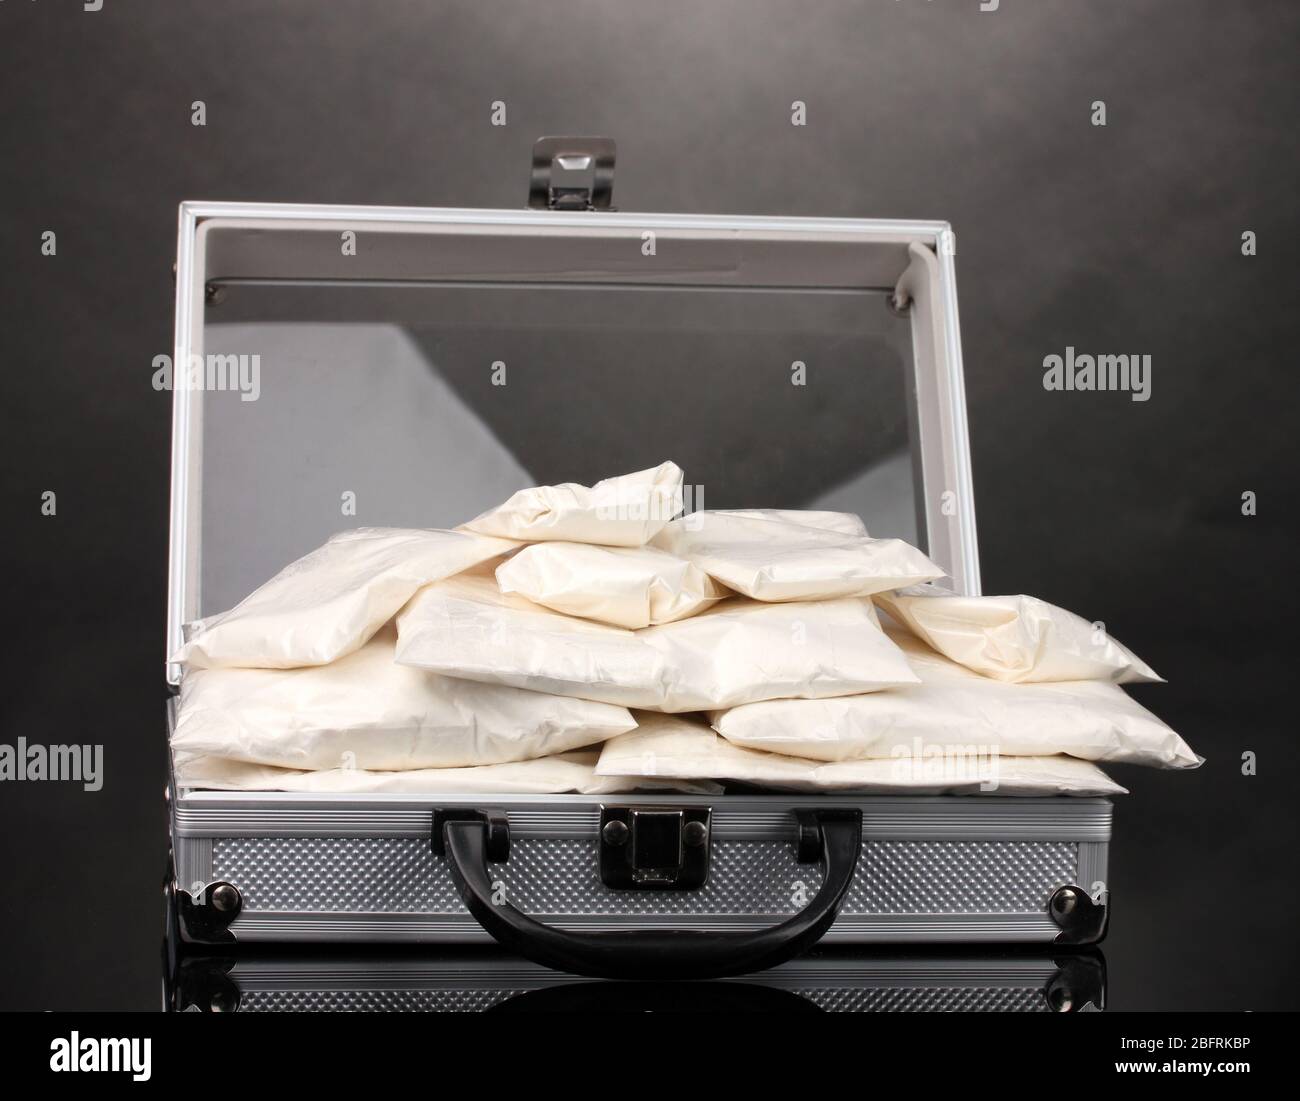 Cocaïne dans une valise sur fond gris Banque D'Images